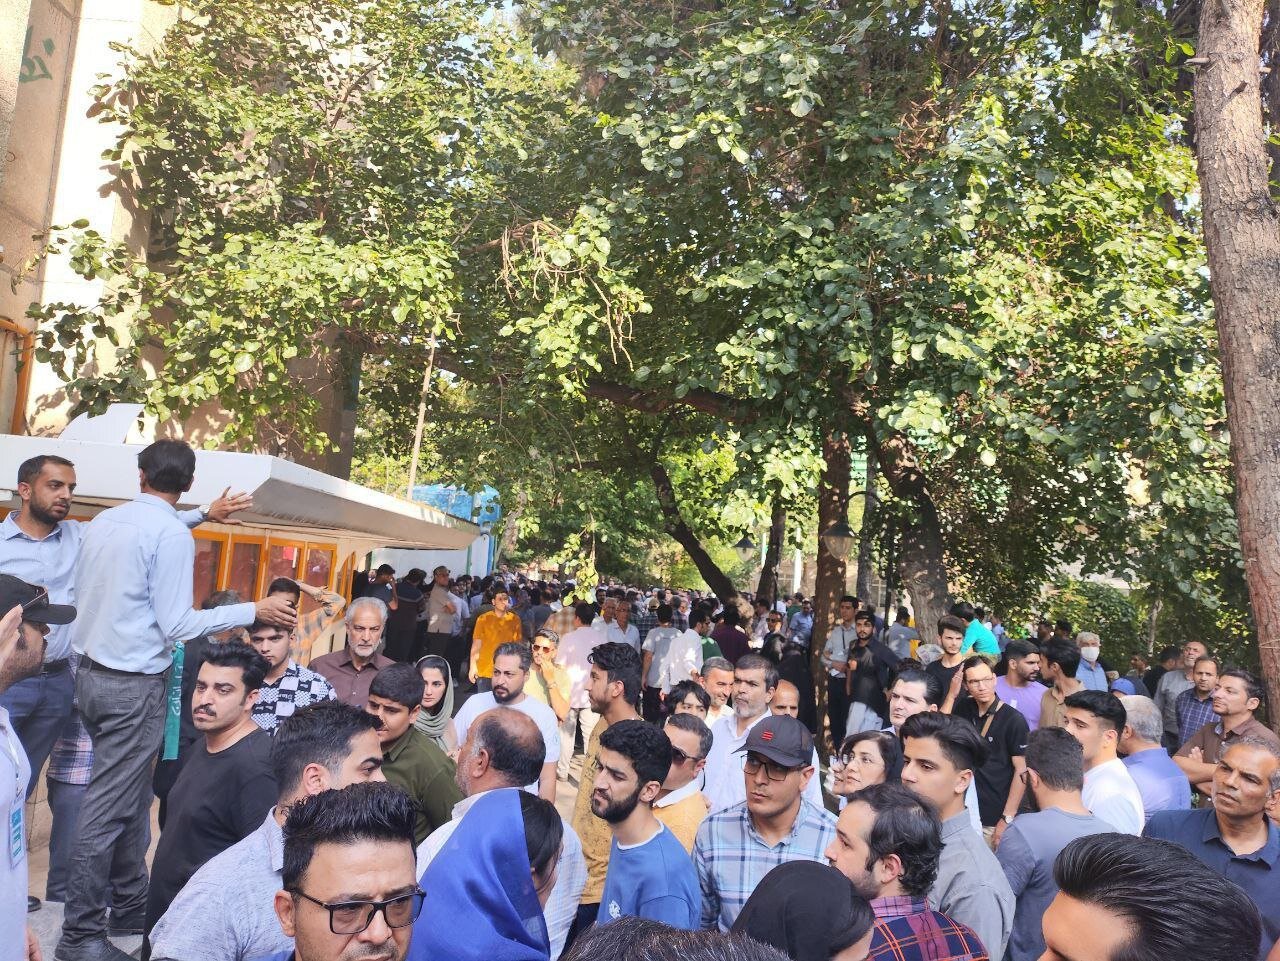 موج مردمی در مشهد برای سخنرانی محمد جواد ظریف / مردم پشت درهای بسته ماندند + تصاویر 5